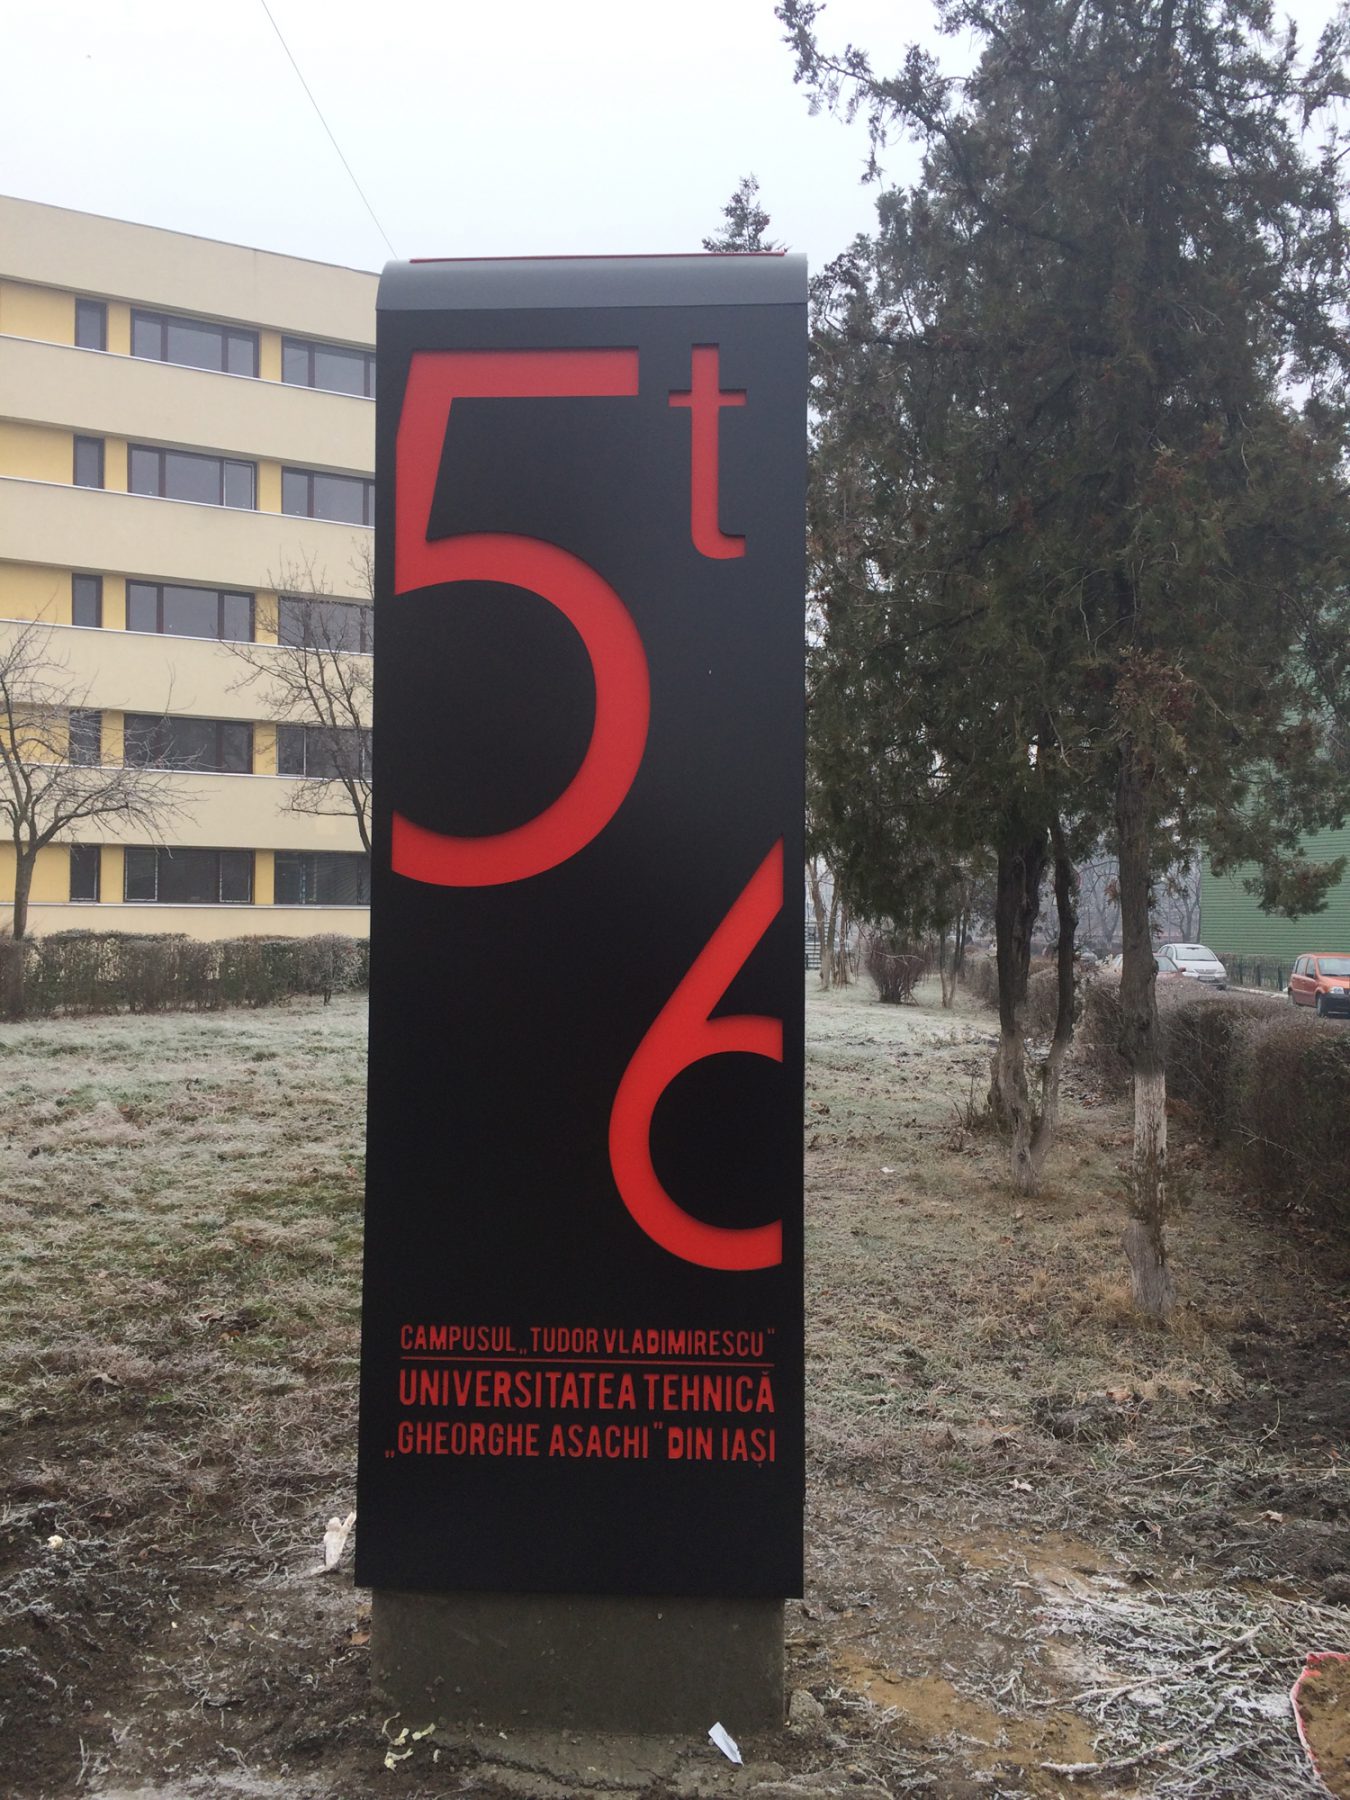 universitatea-tehnica-continua-un-amplu-proiect-de-modernizare-a-campusului-tudor-vladimirescu-prin-amplasarea-totemurilor-de-iluminare-a-caminelor-realizate-de-studenti